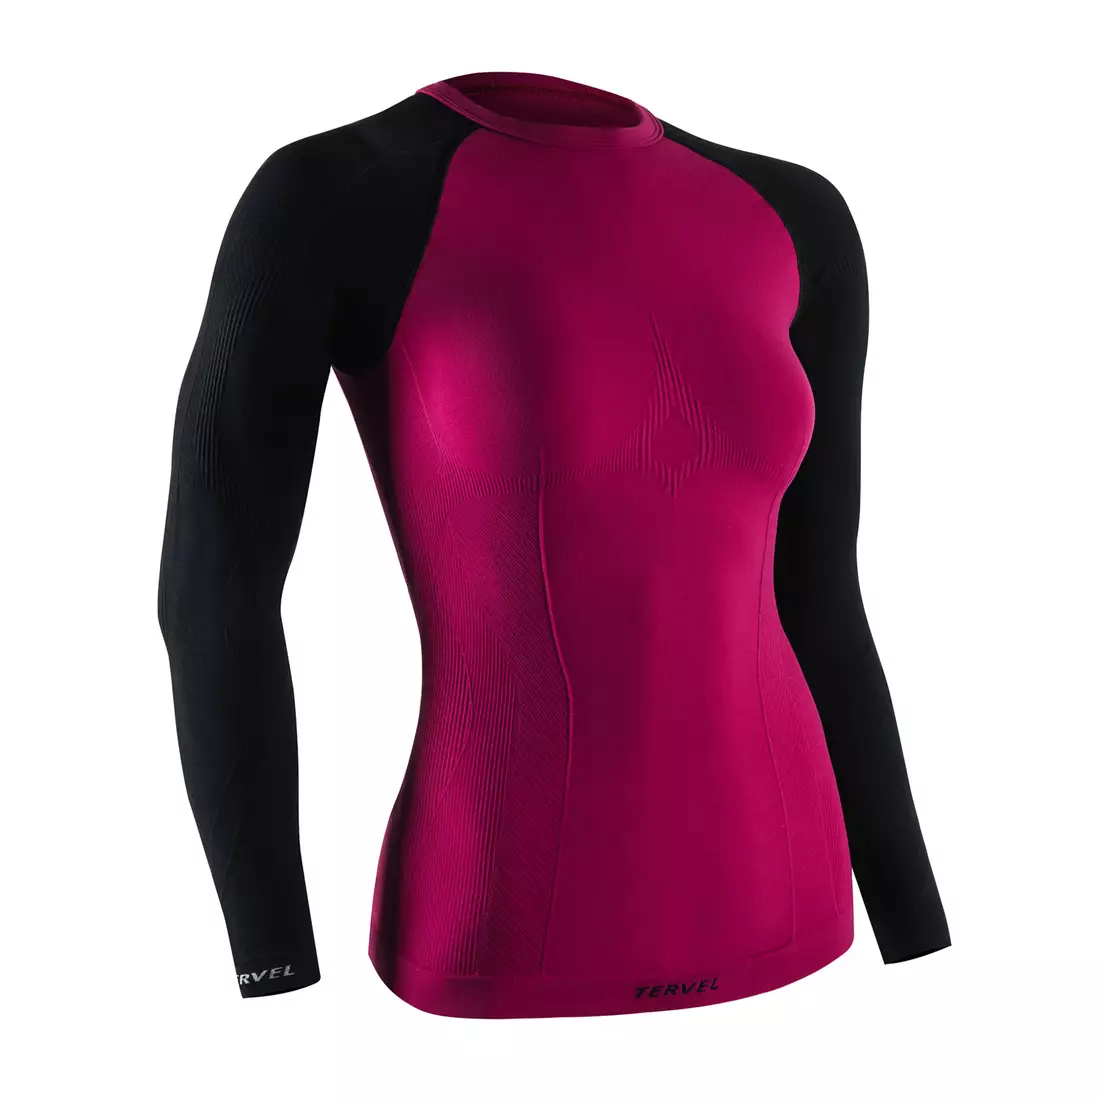 TERVEL COMFORTLINE 2002 - tricou termic dama, maneca lunga, culoare: roz (carmin)-negru